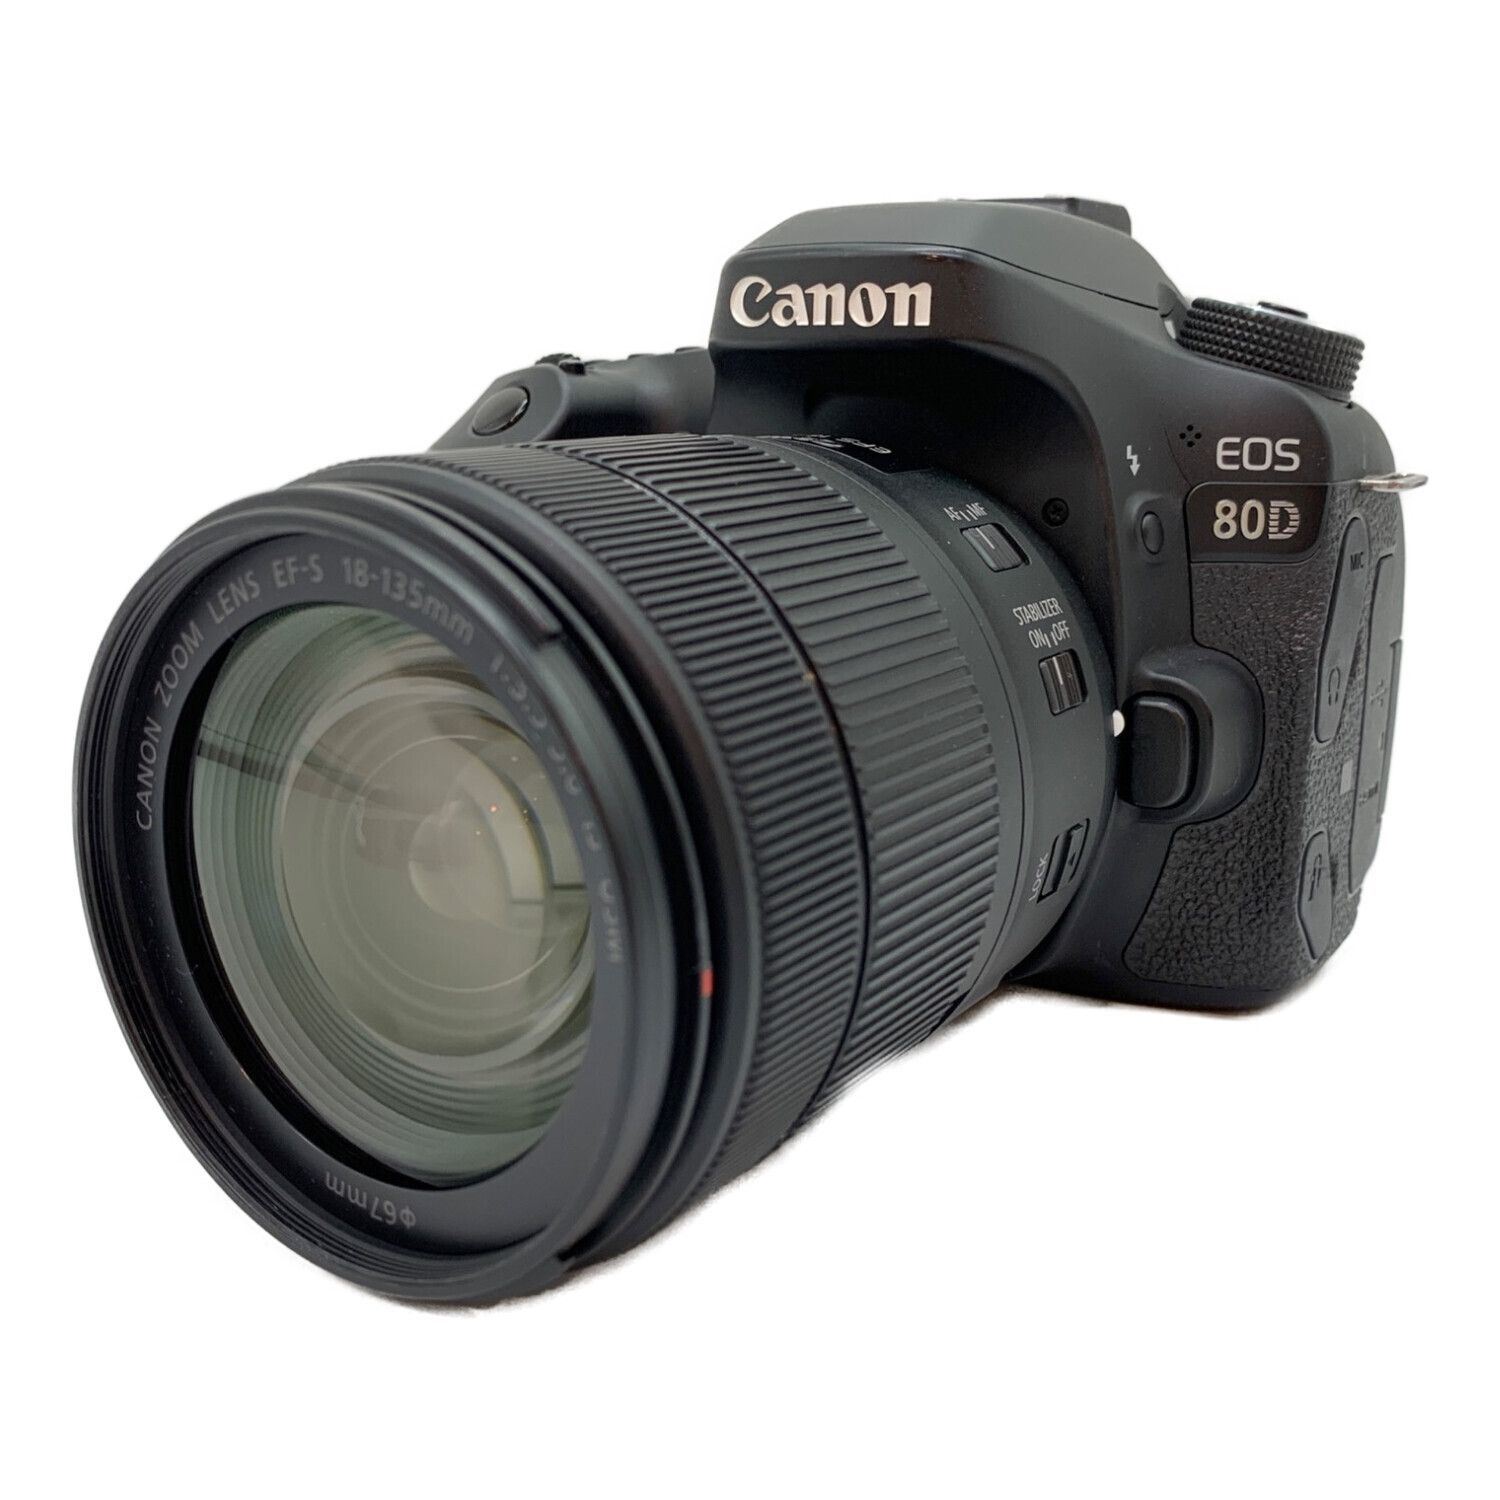 CANON (キャノン) デジタル一眼レフカメラ バリアングル液晶 EOS 80D